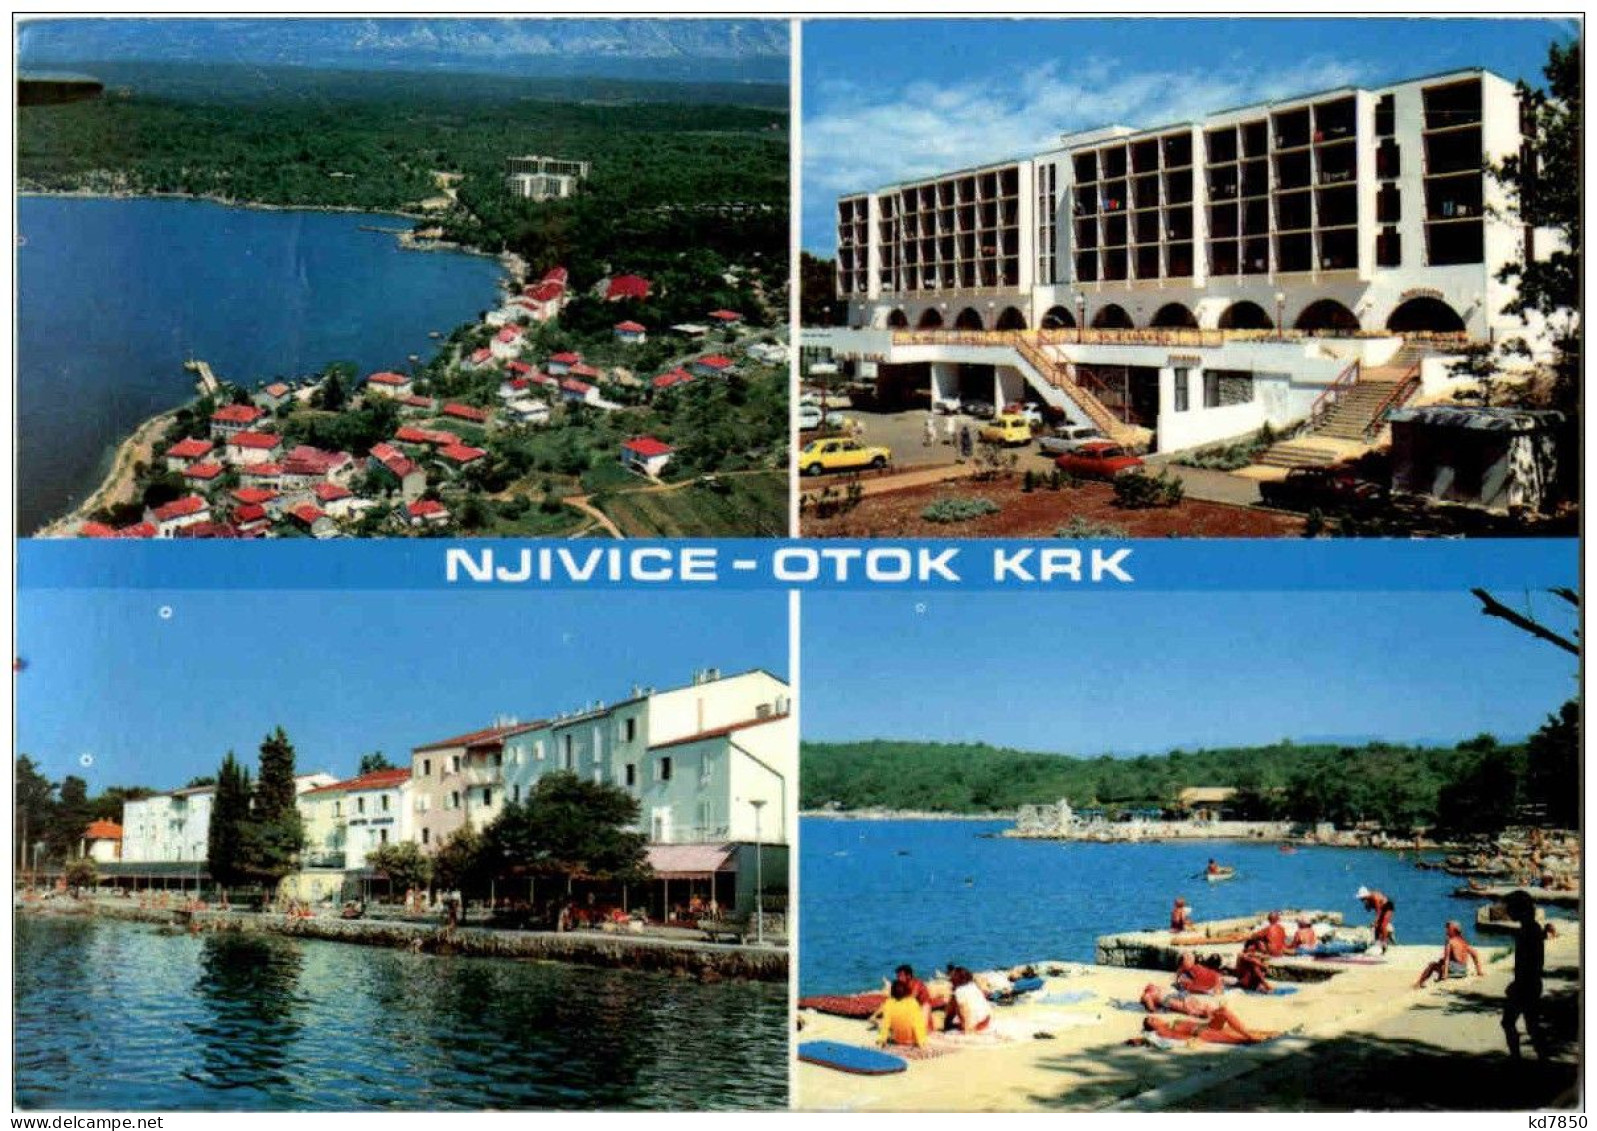 Njivice - Otok Krk - Croatia